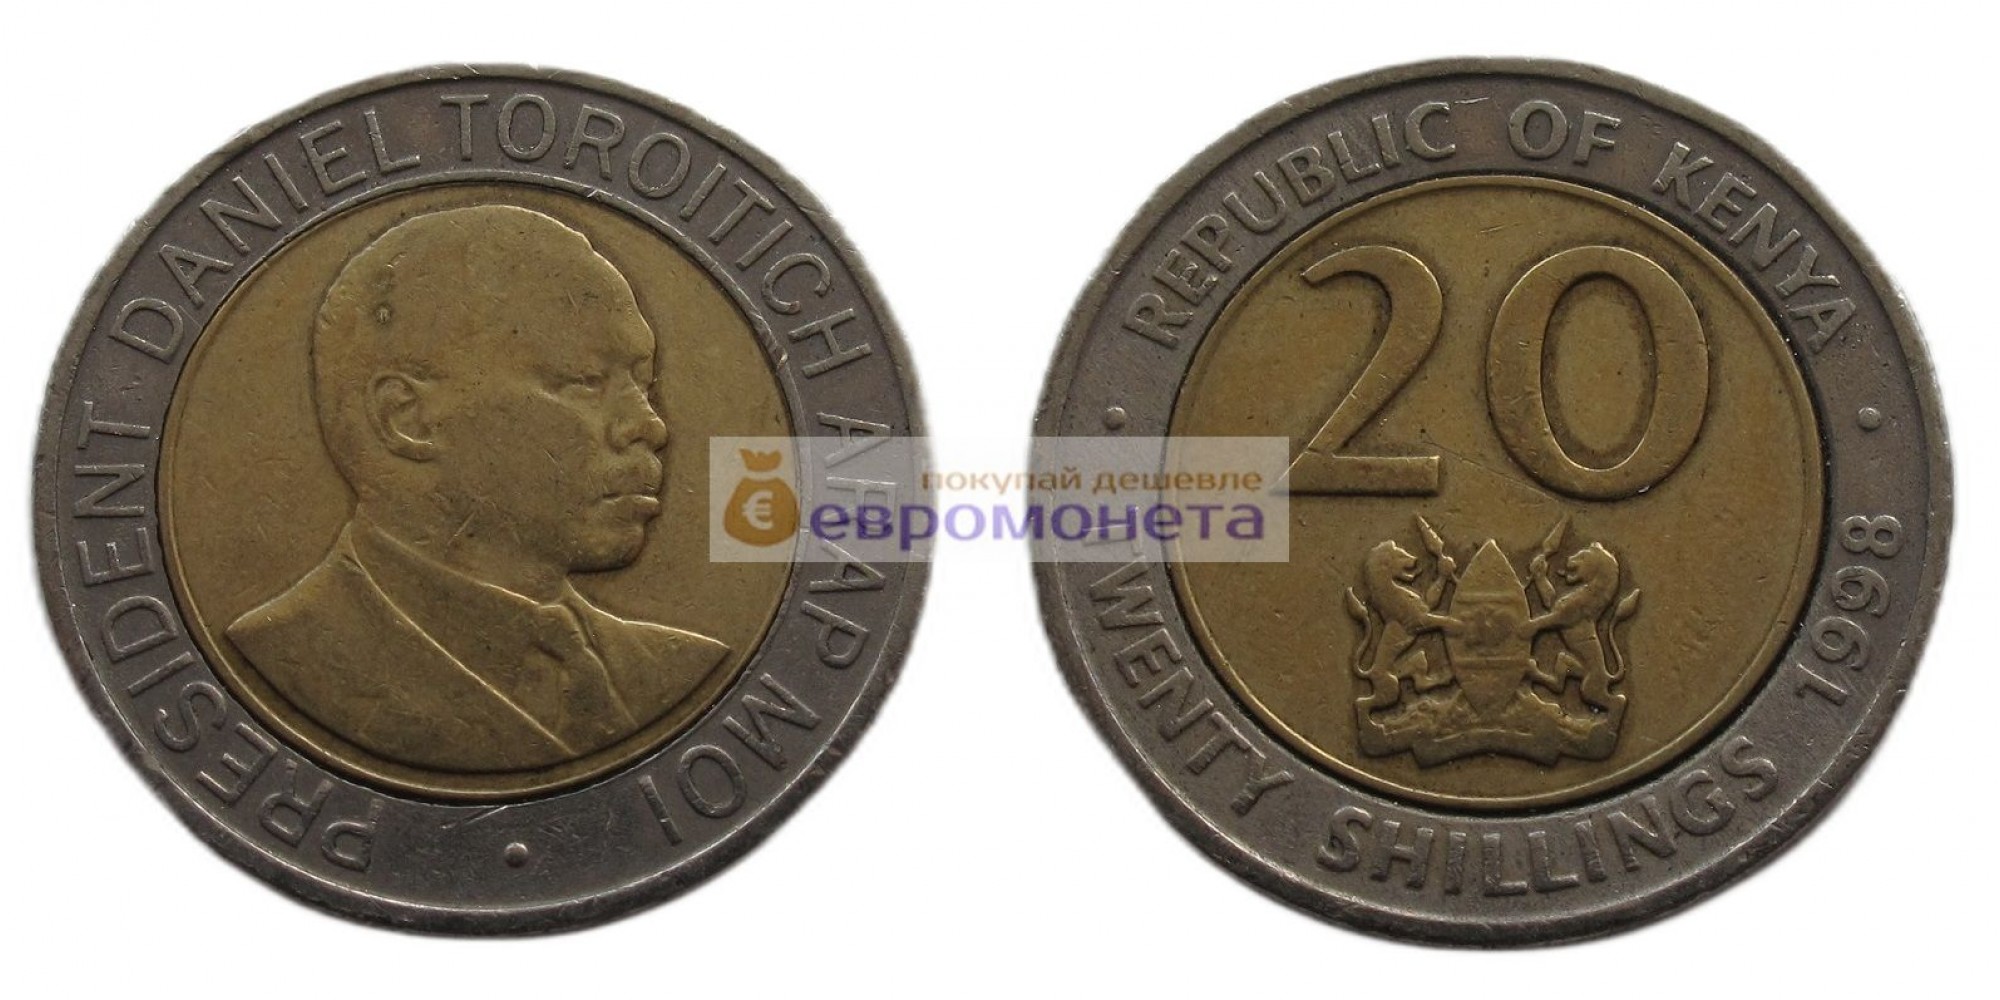 Республика Кения 20 шиллингов 1998 год. Биметалл